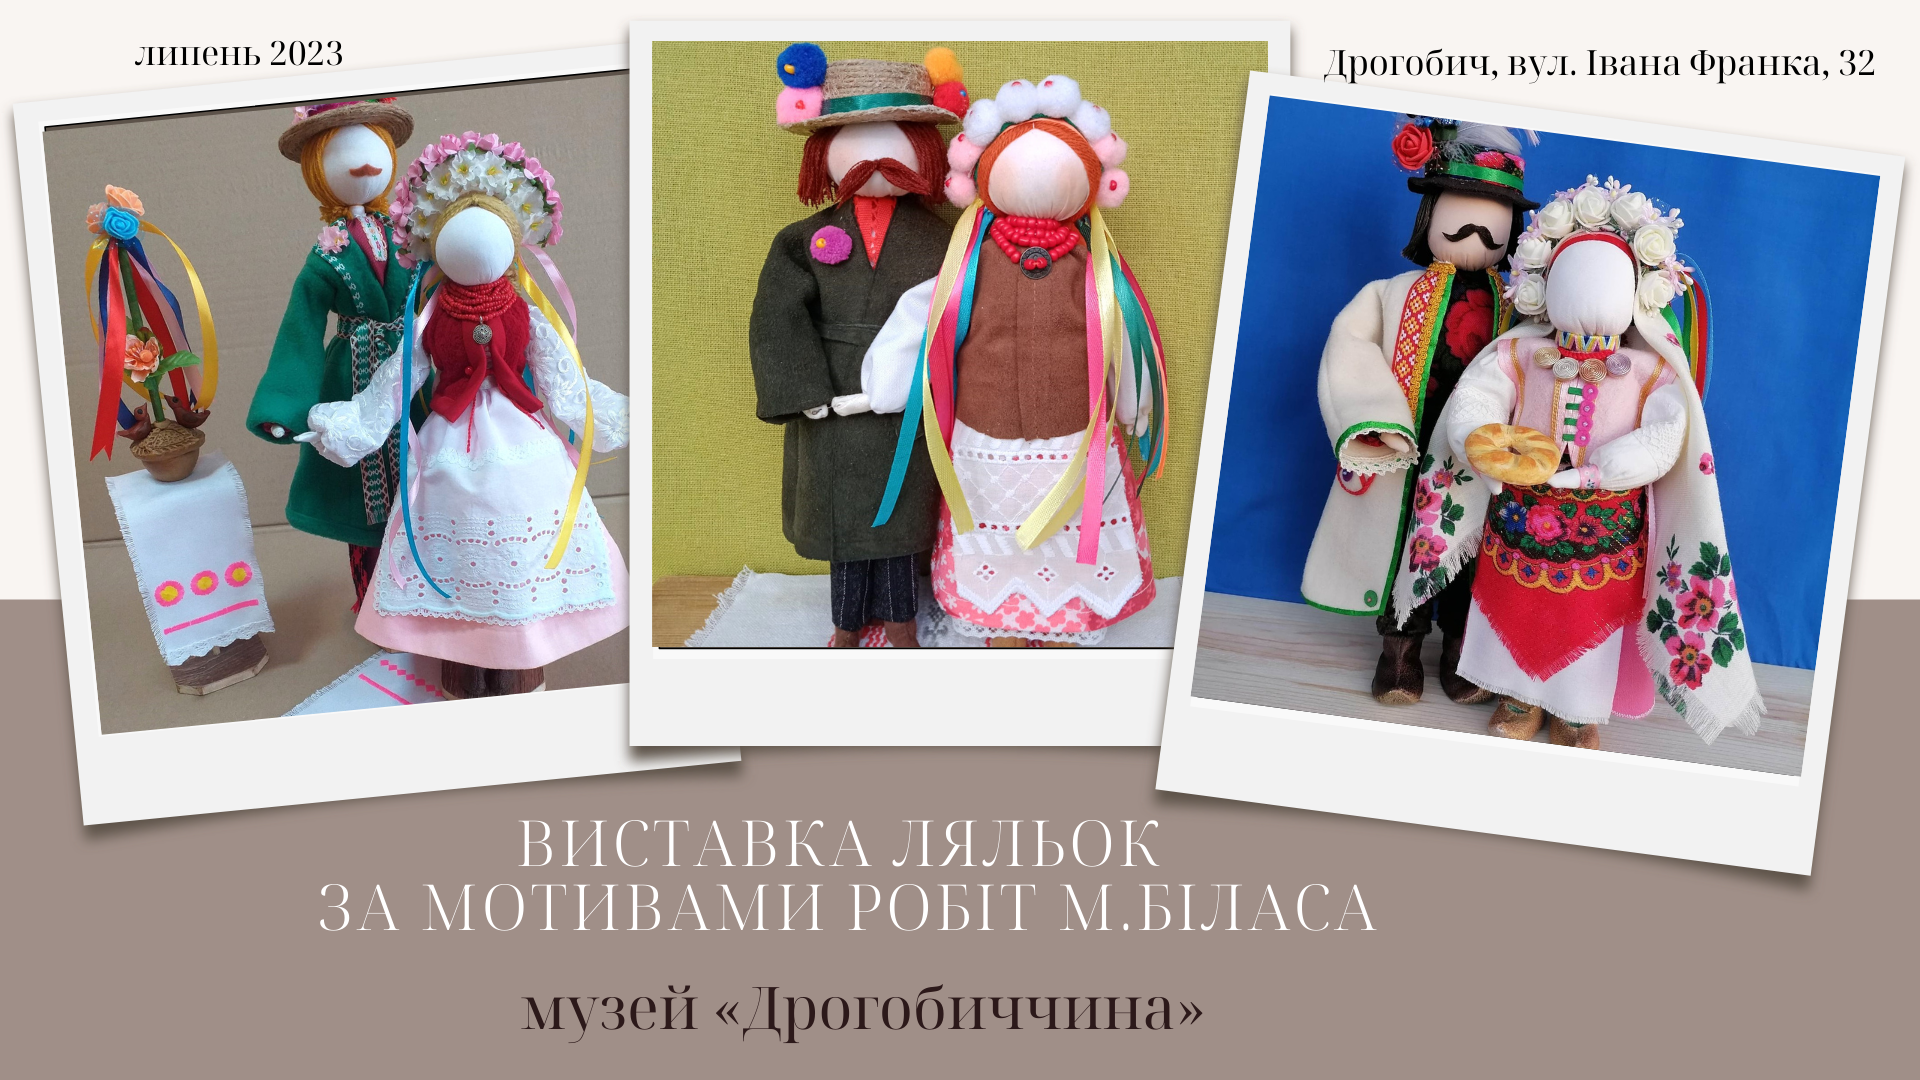 Музей «Дрогобиччина» запрошує на виставку українських ляльок, створених майстринями України, Бразилії, Норвегії та Польщі